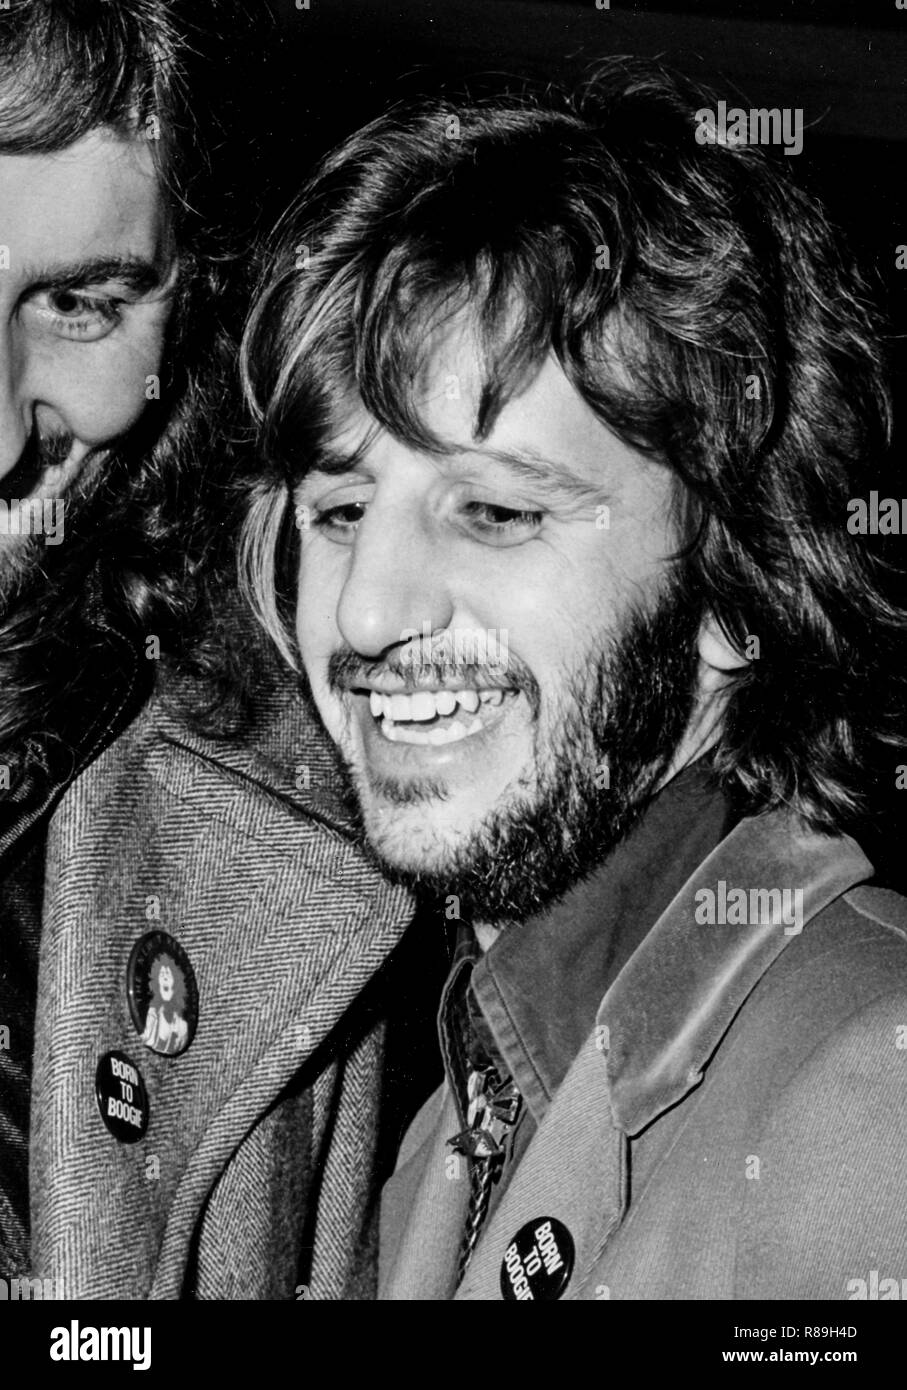 ringo starr, 1972 Stock Photo